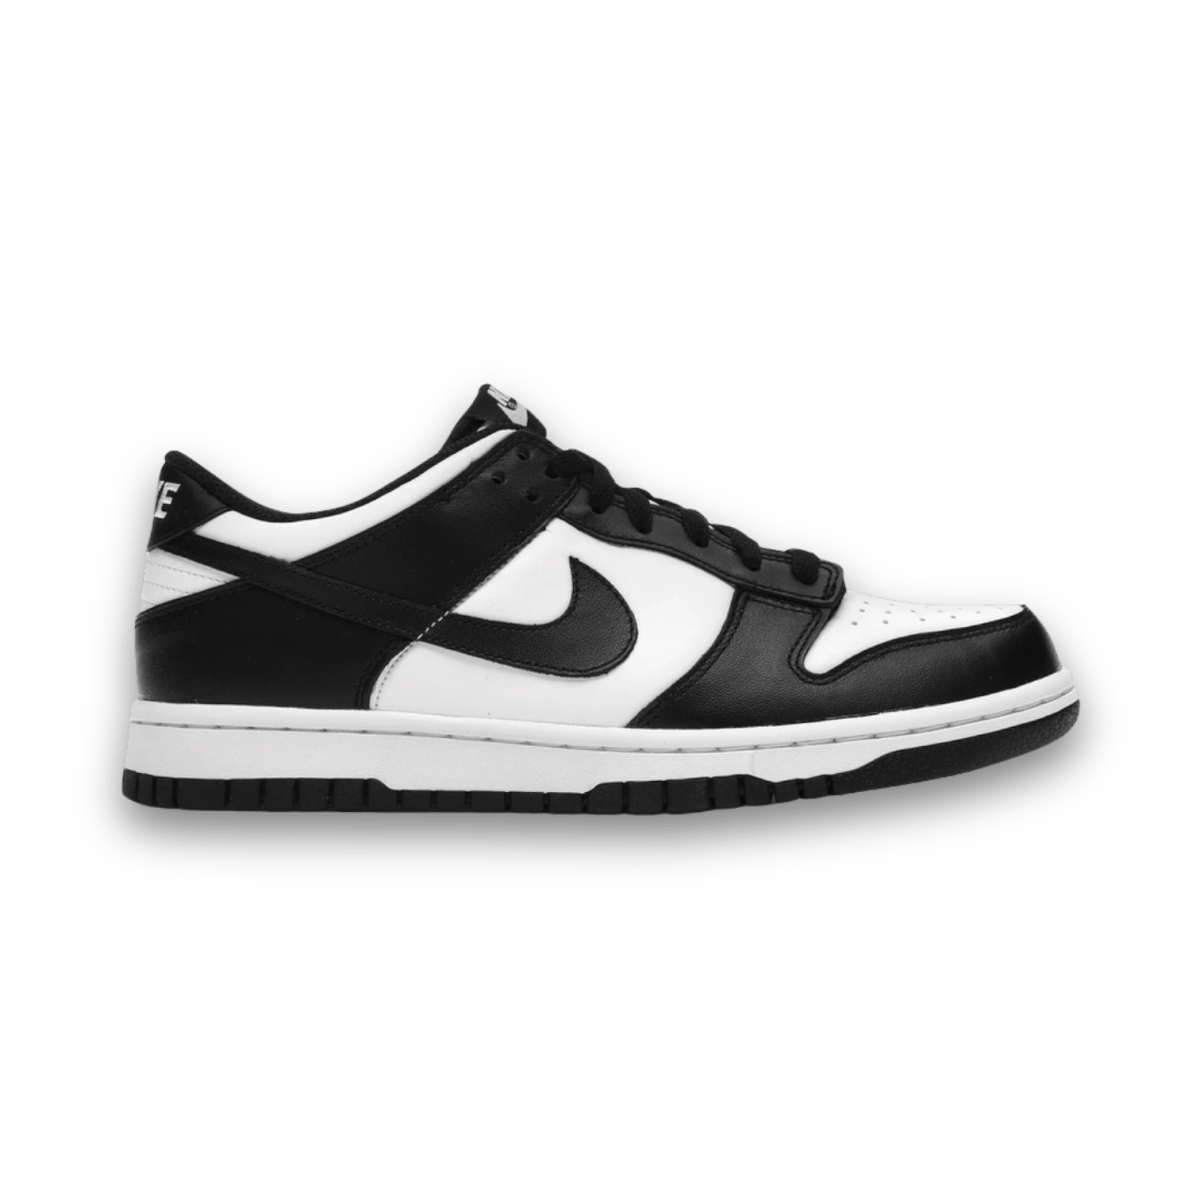 Dunk Low Retro Panda White Black - Women - Low Sneaker - Jawns on Fire Sneakers & Streetwear